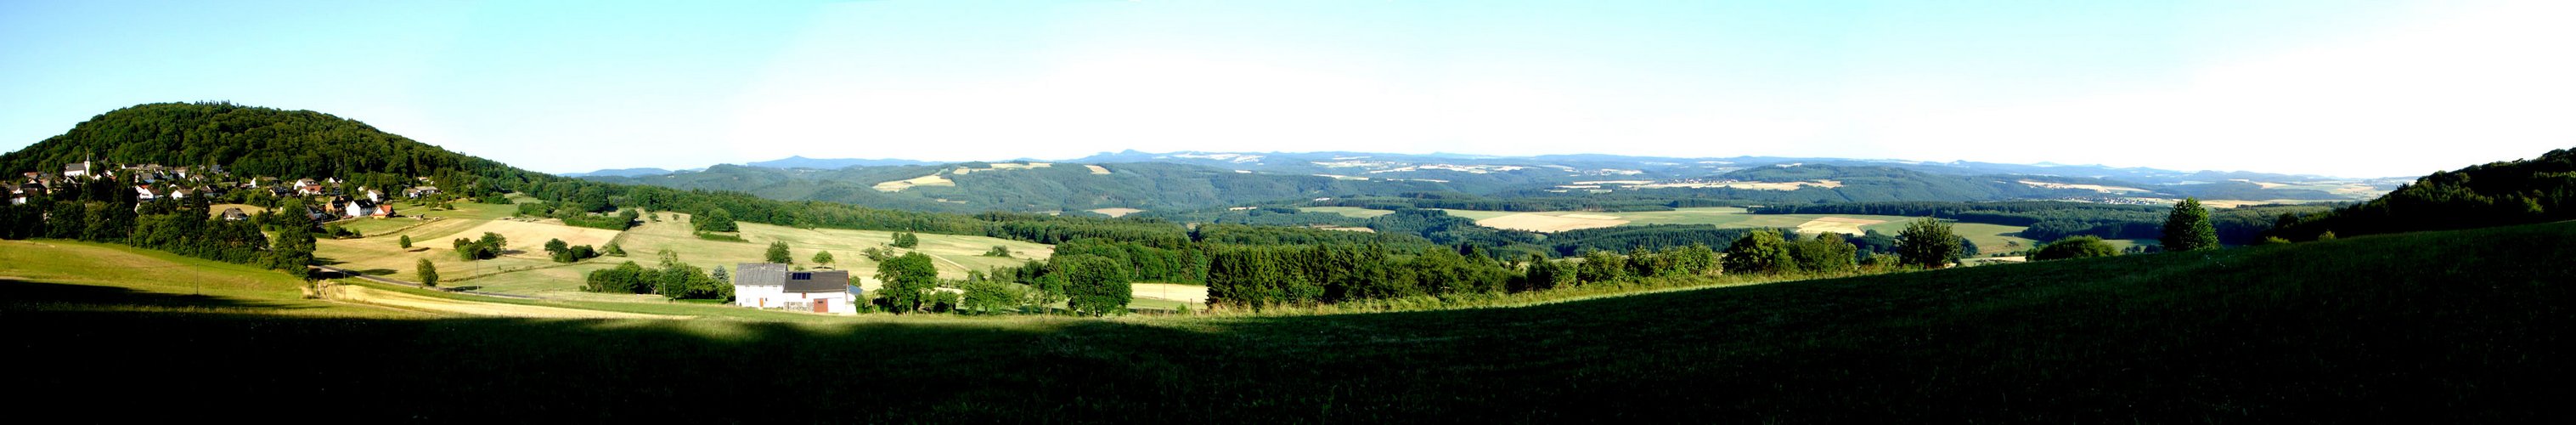 Eifelpanorama von der Ortschaft Aremberg aus gesehen